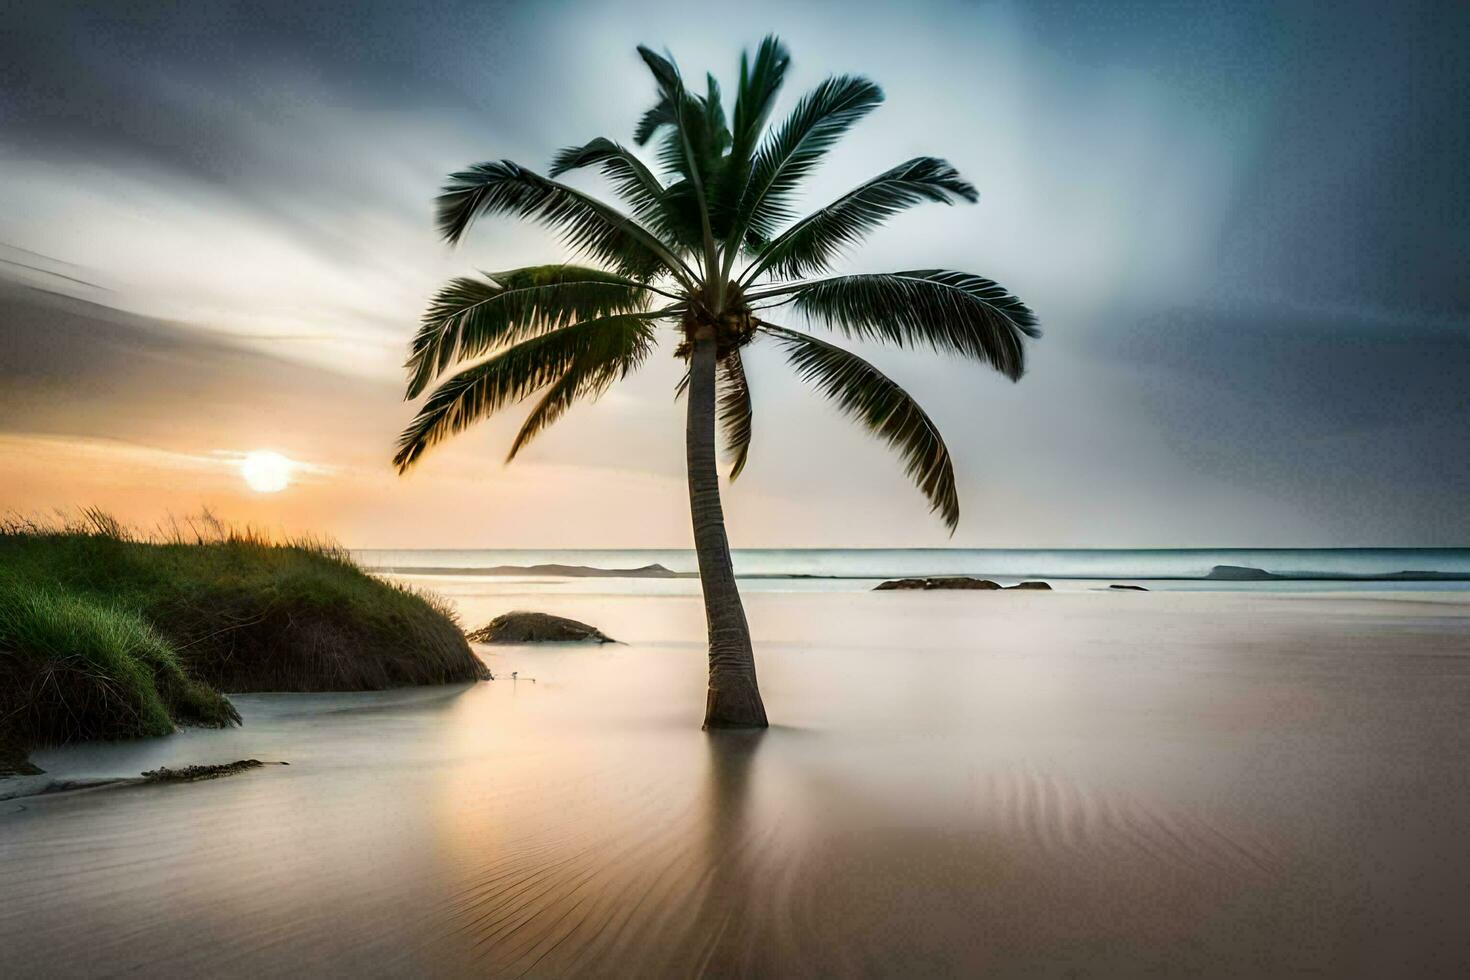 ein Palme Baum steht allein auf ein Strand beim Sonnenuntergang. KI-generiert foto